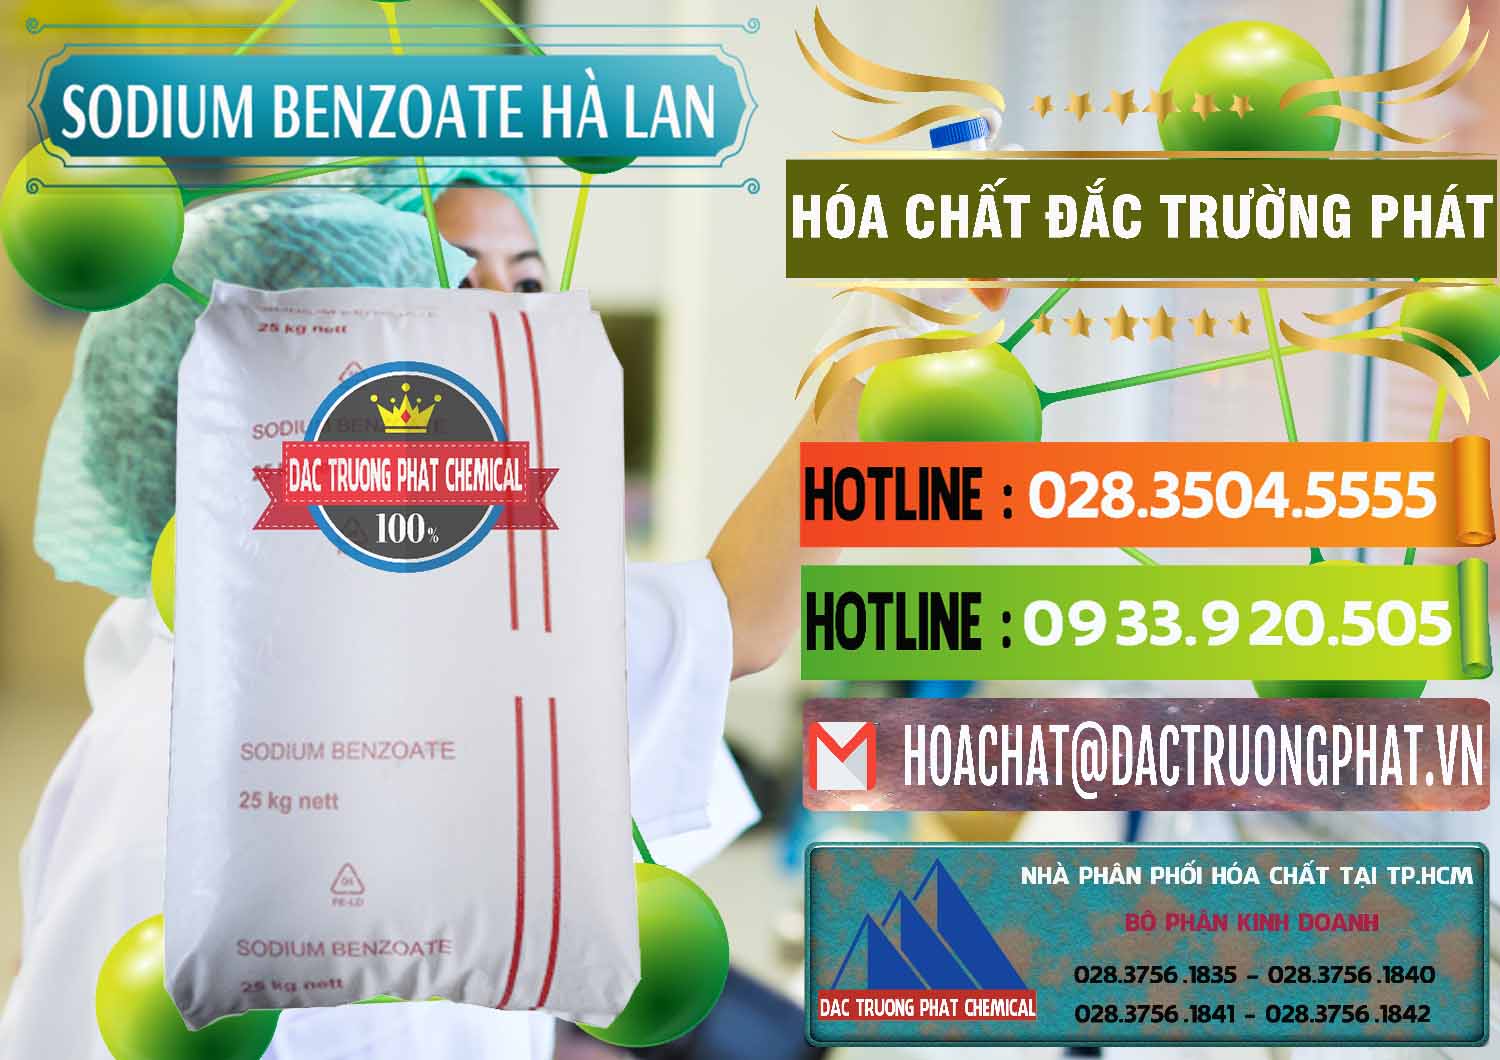 Nơi chuyên cung cấp - bán Sodium Benzoate - Mốc Bột Chữ Cam Hà Lan Netherlands - 0360 - Công ty cung cấp và kinh doanh hóa chất tại TP.HCM - cungcaphoachat.com.vn